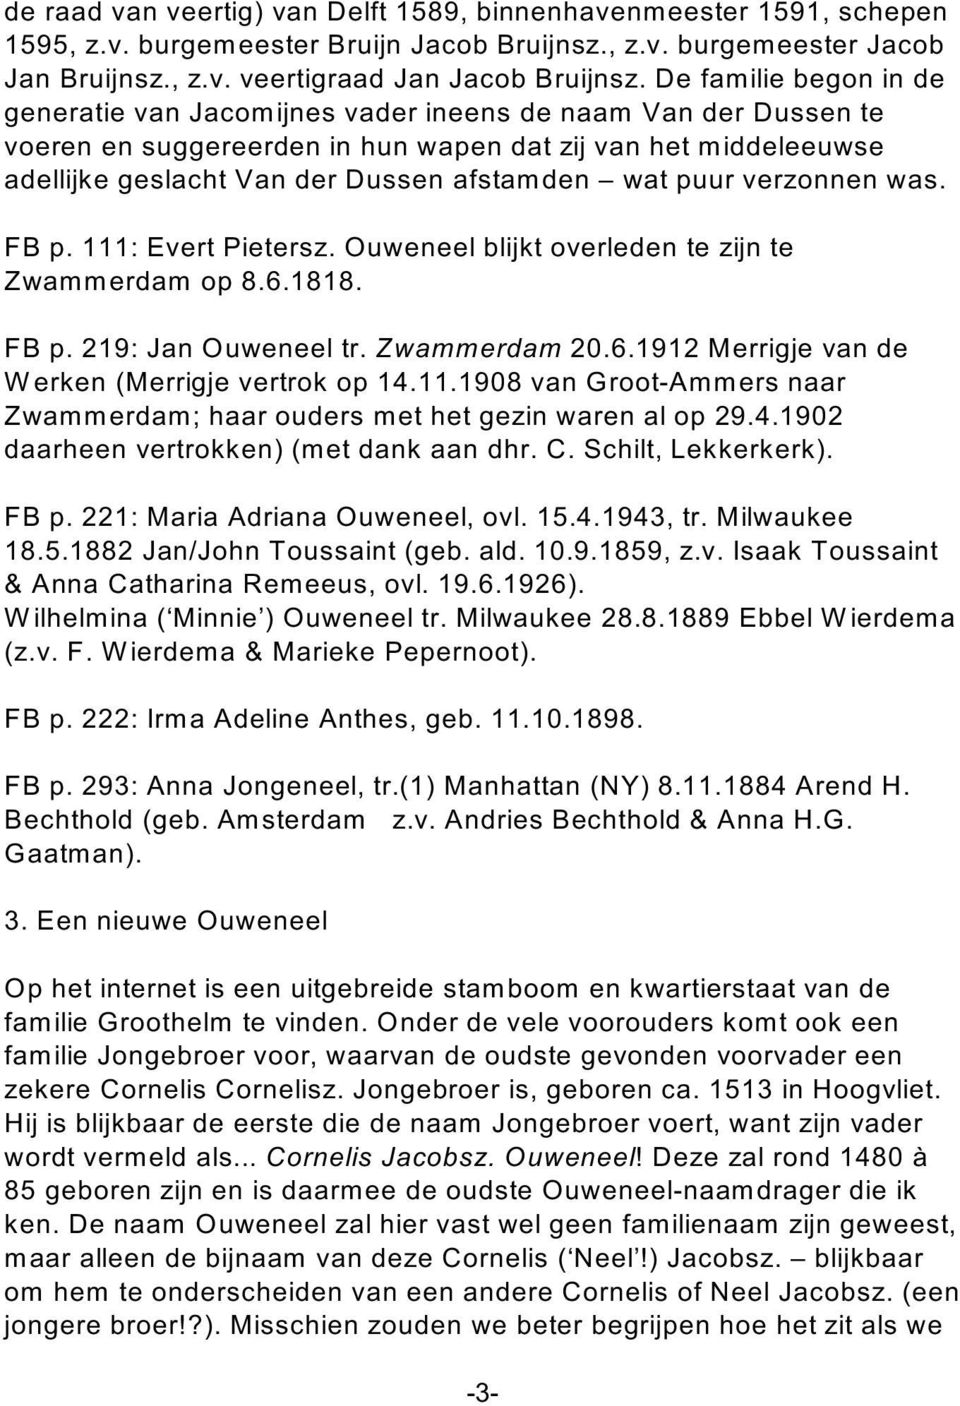 wat puur verzonnen was. FB p. 111: Evert Pietersz. Ouweneel blijkt overleden te zijn te Zwam merdam op 8.6.1818. FB p. 219: Jan Ouweneel tr. Zwammerdam 20.6.1912 Merrigje van de W erken (Merrigje vertrok op 14.